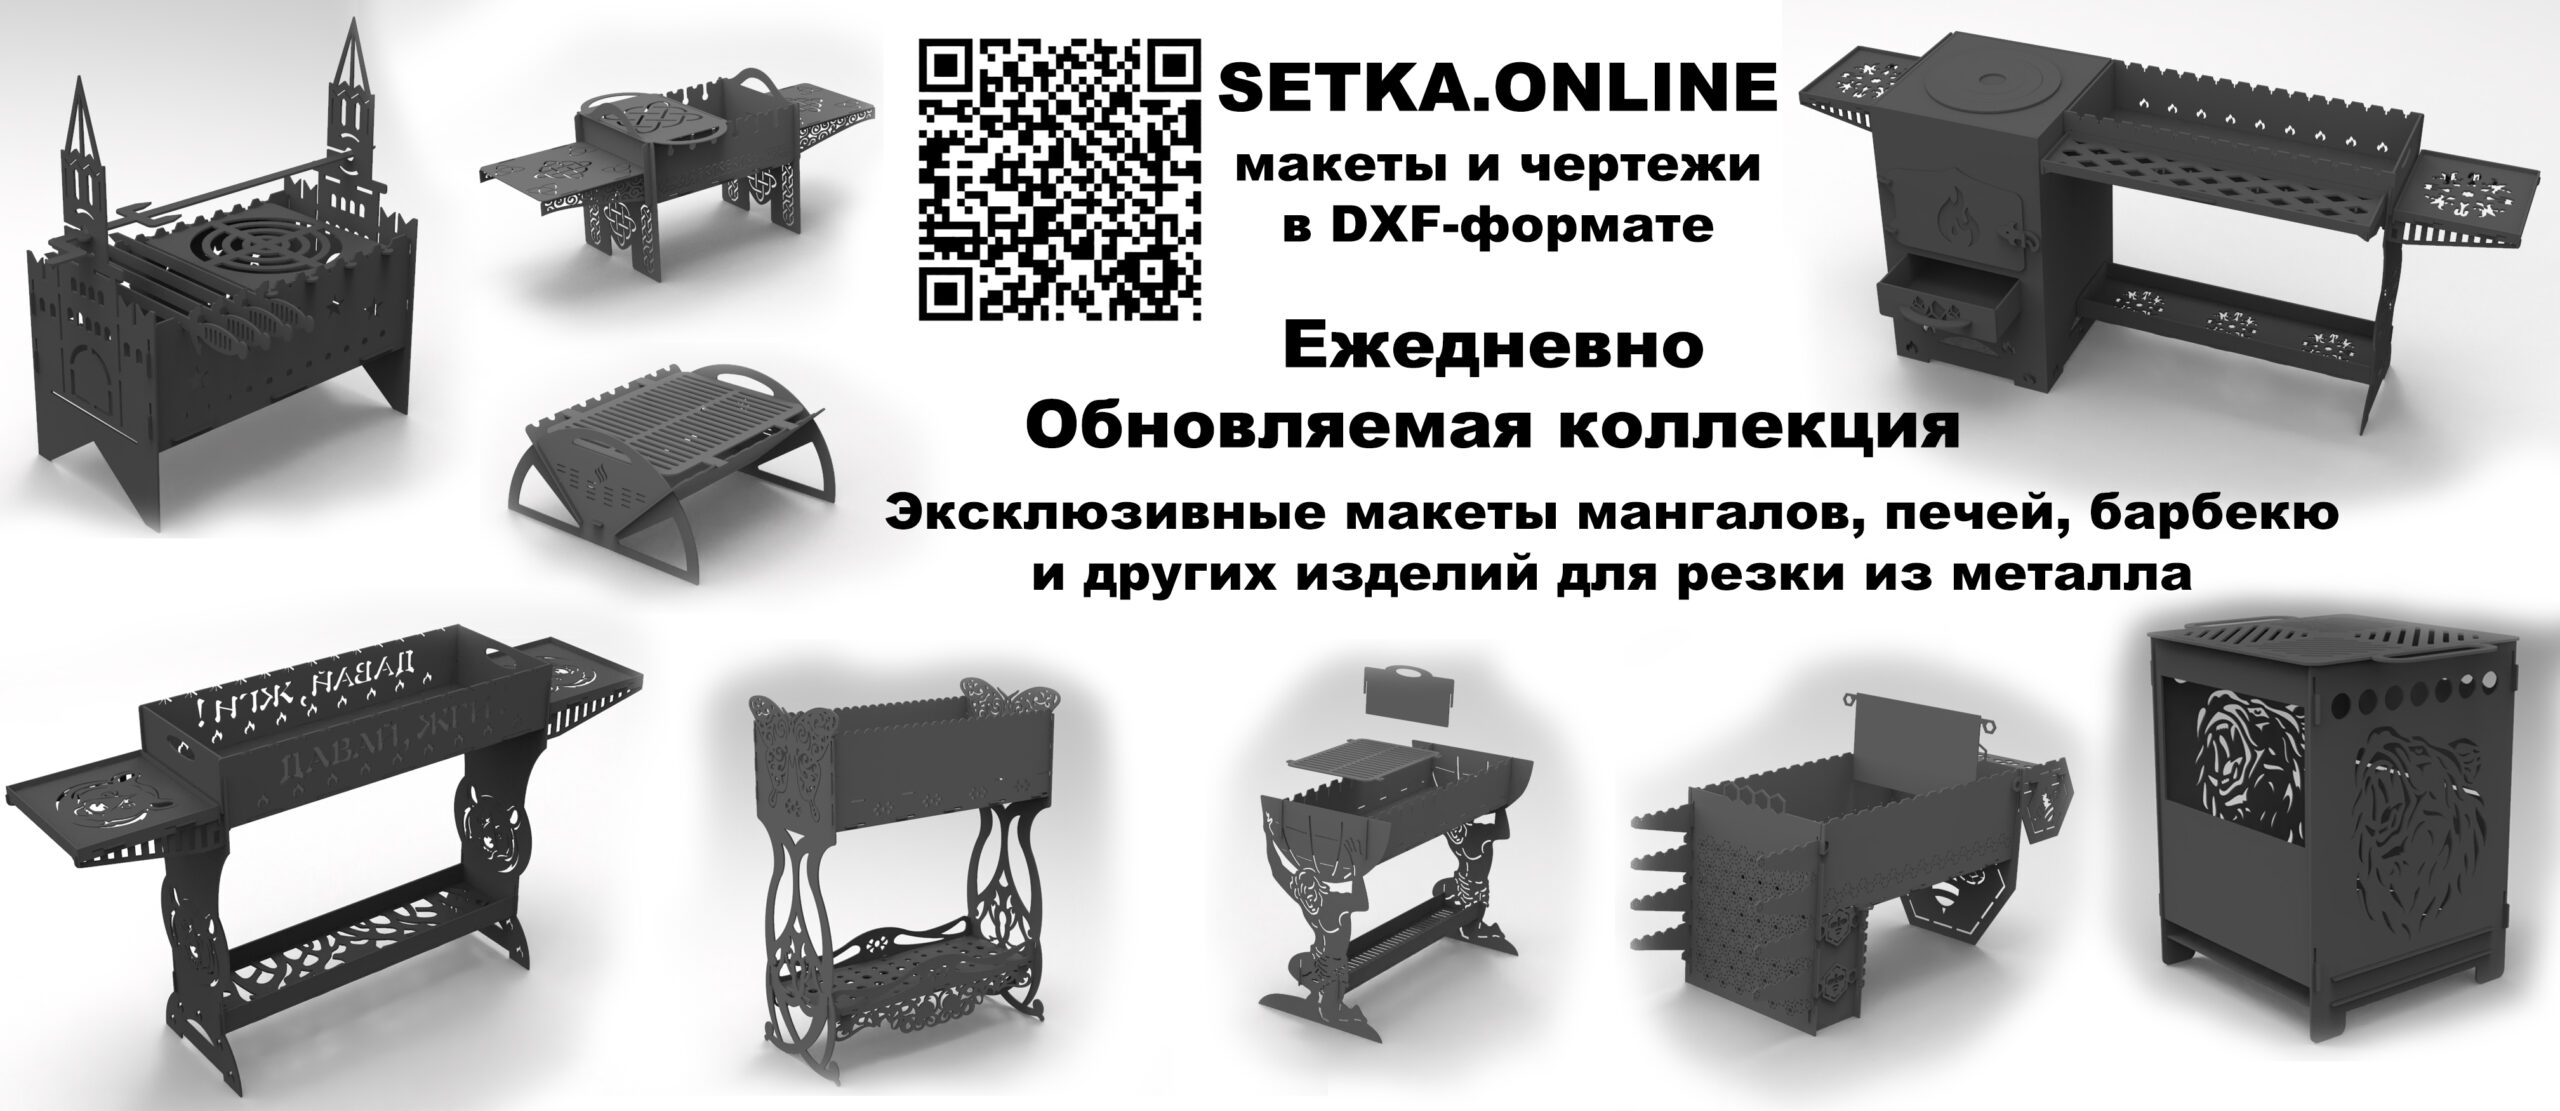 Обновляемая коллекция макетов DXF